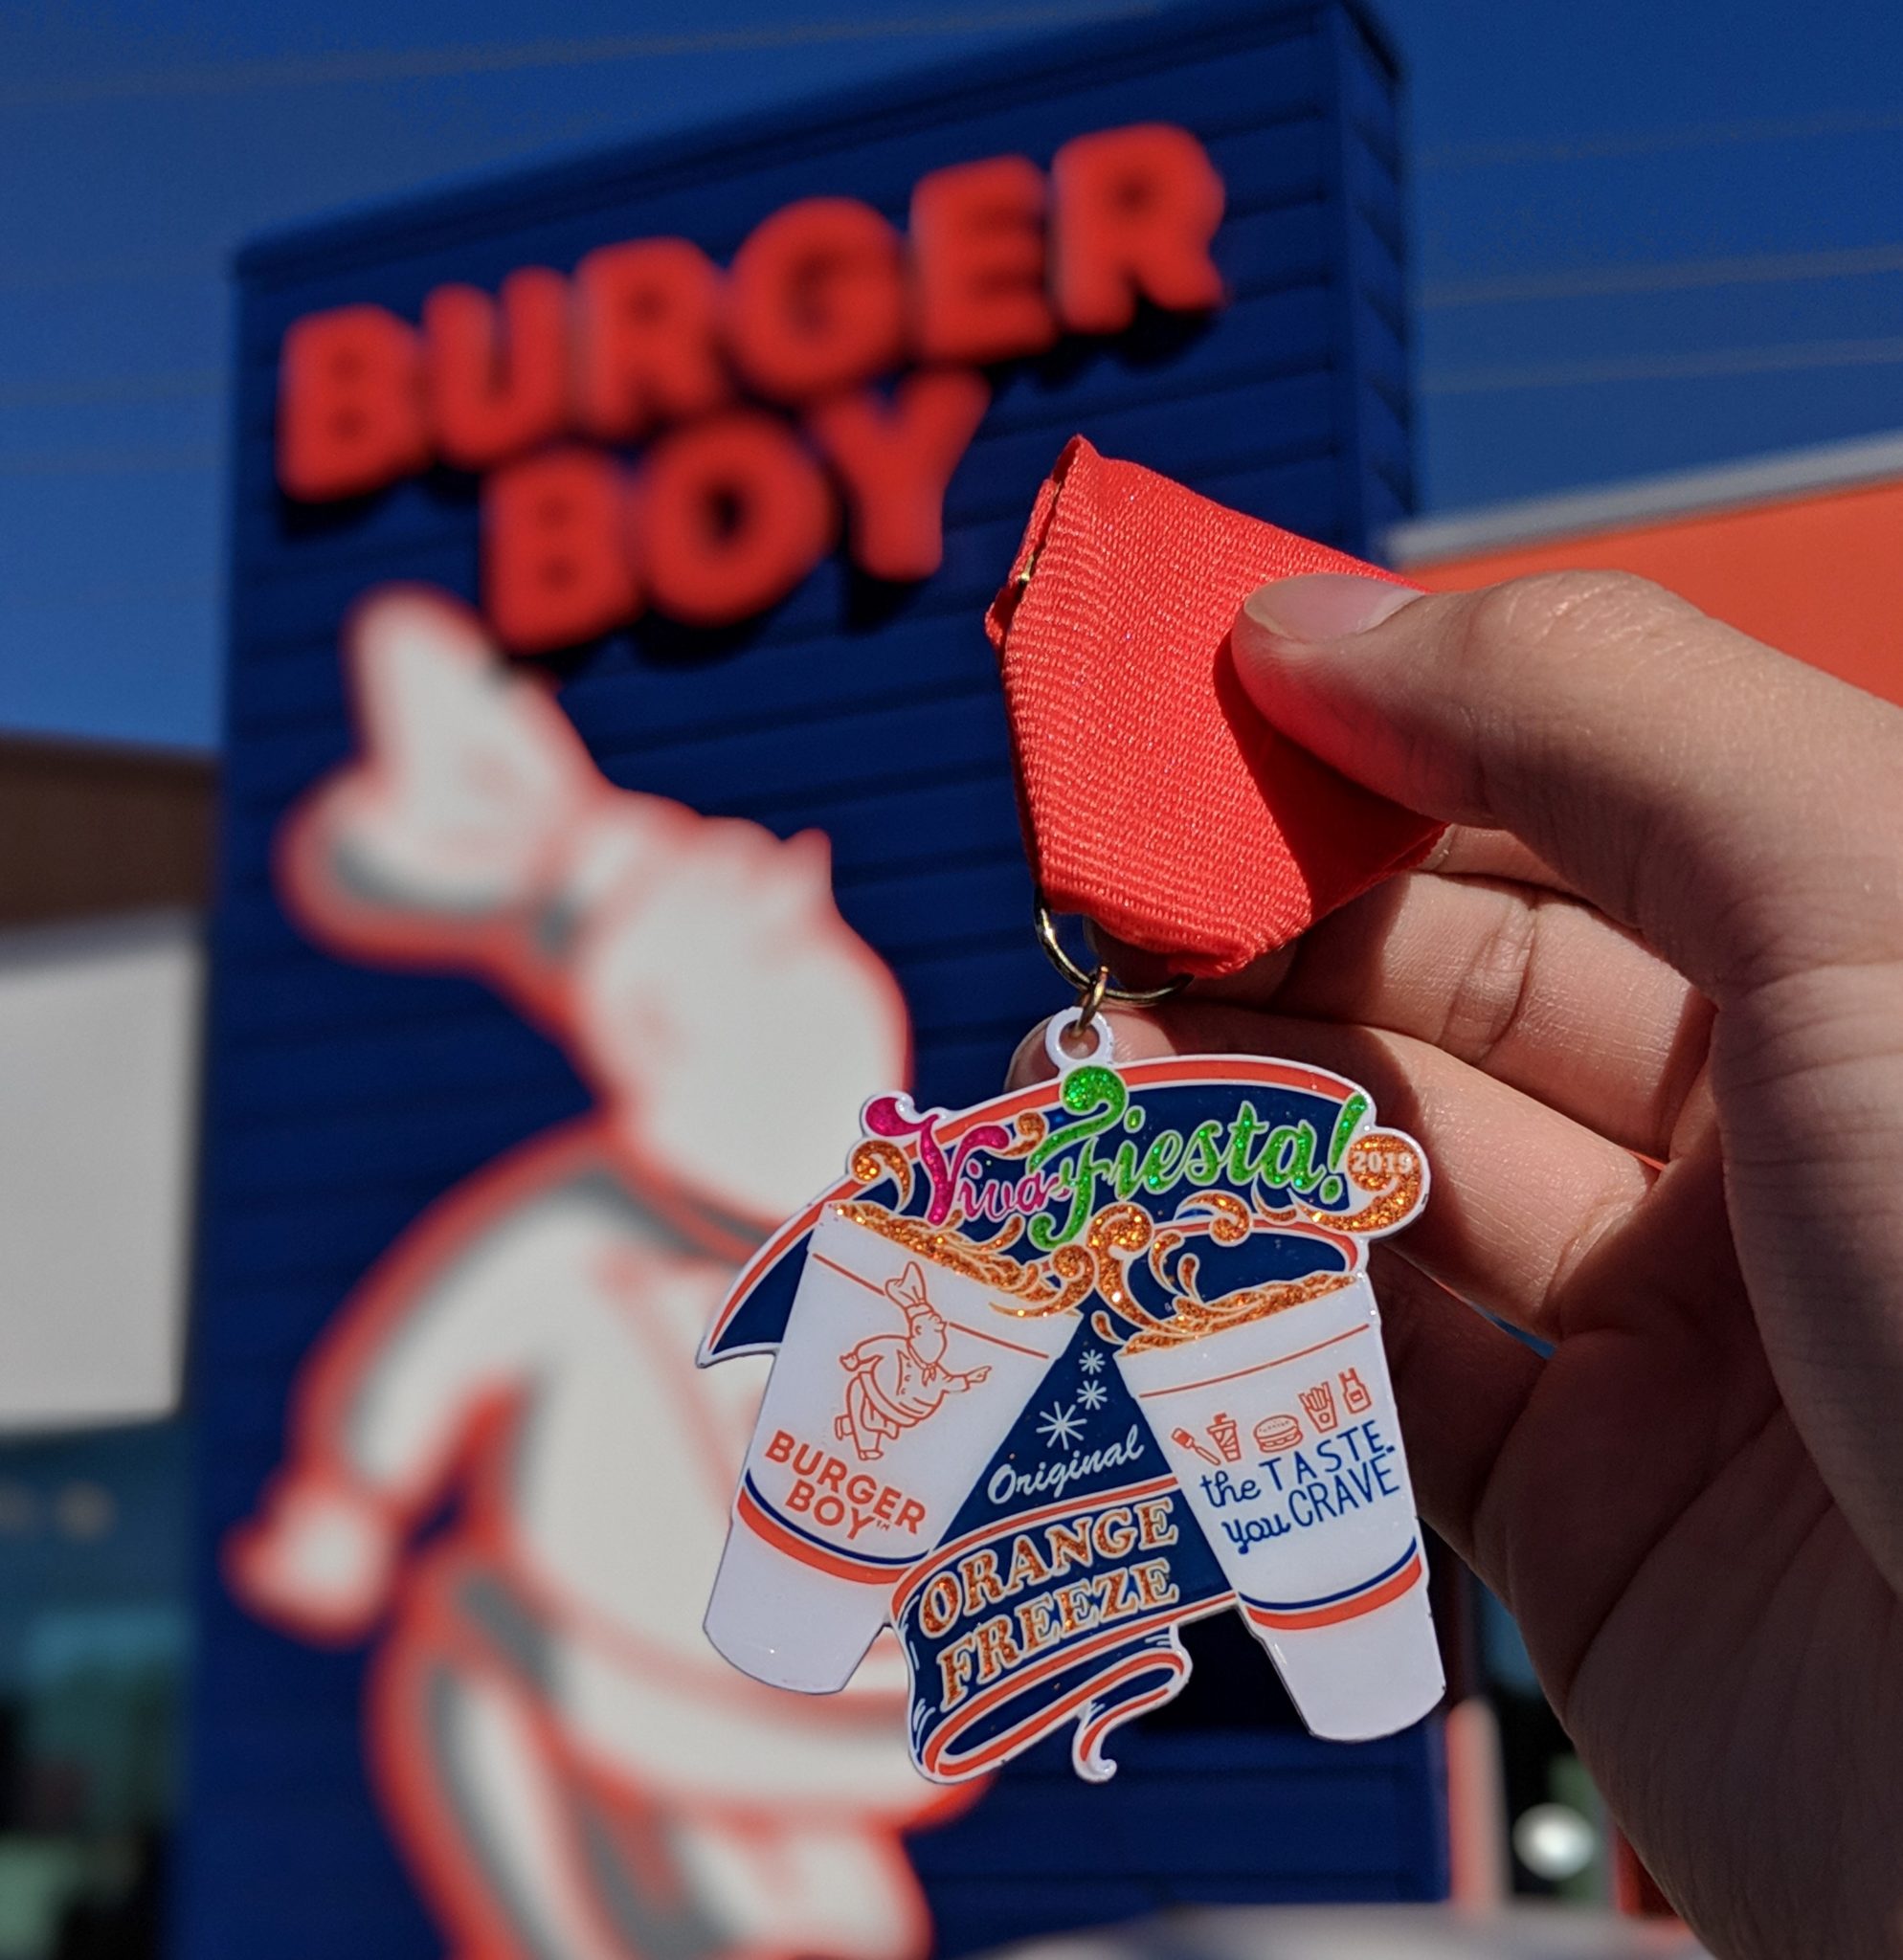 FIESTA MEDAL UPDATE: 2019 Burger Boy Fiesta Medal is here!